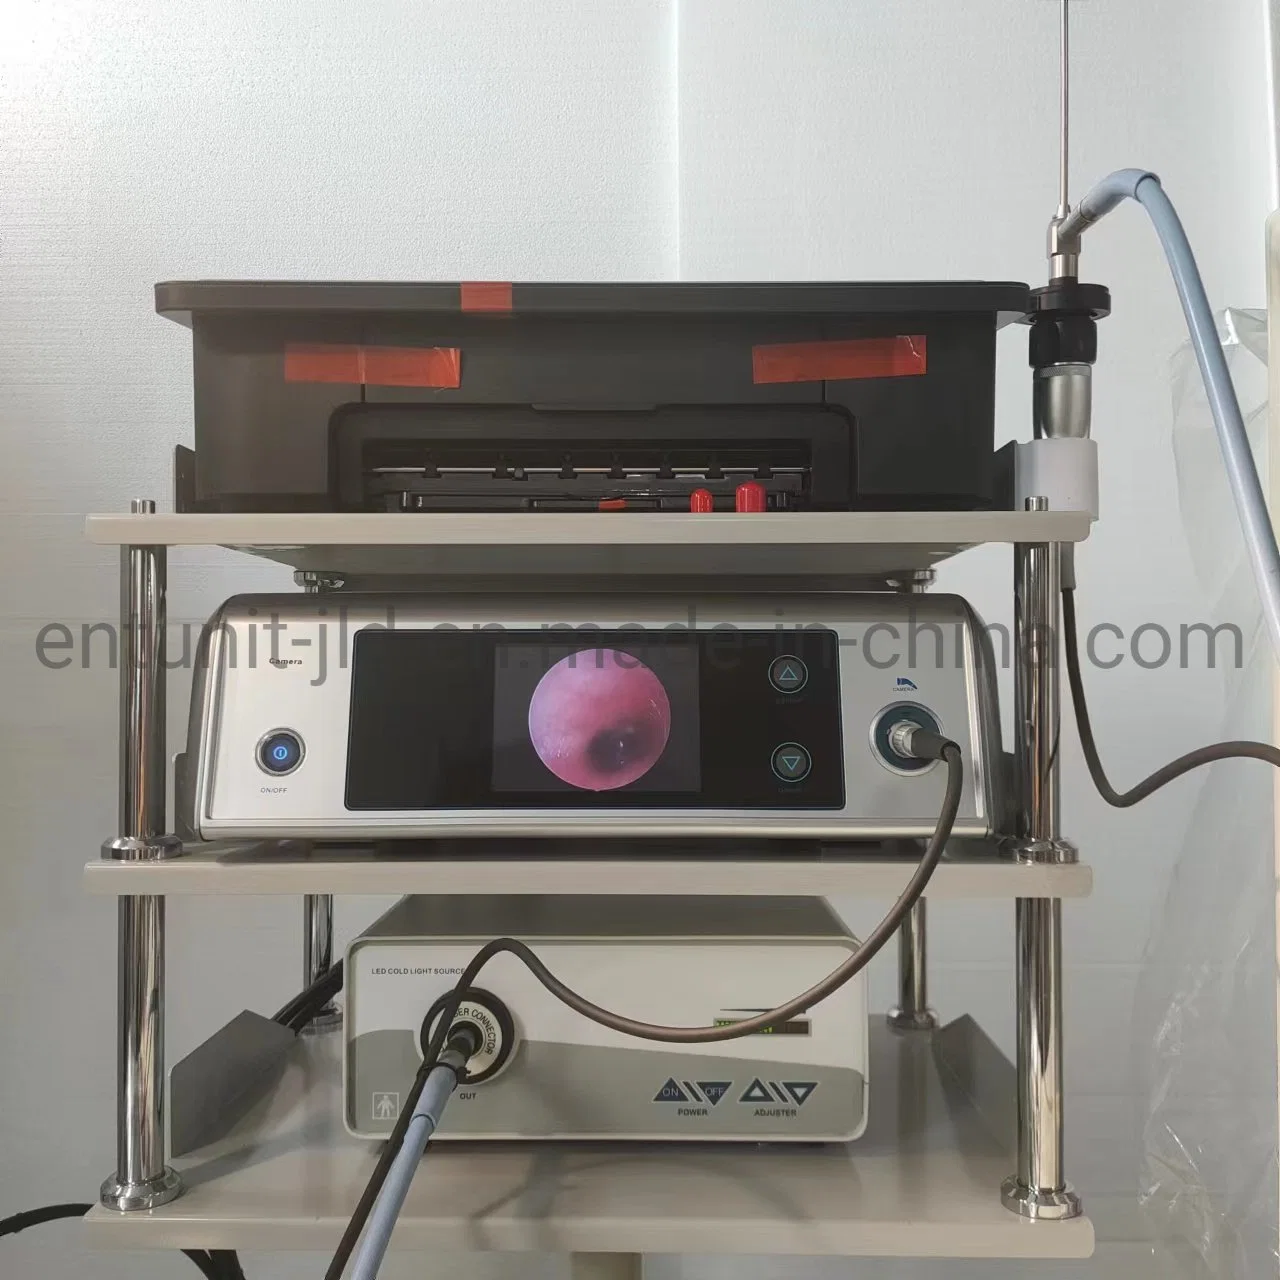 Les instruments chirurgicaux Laparoscope Ent Ent Endoscope caméra médicale système du processeur vidéo Endoscope Chirurgie de l'appareil photo appareil photo